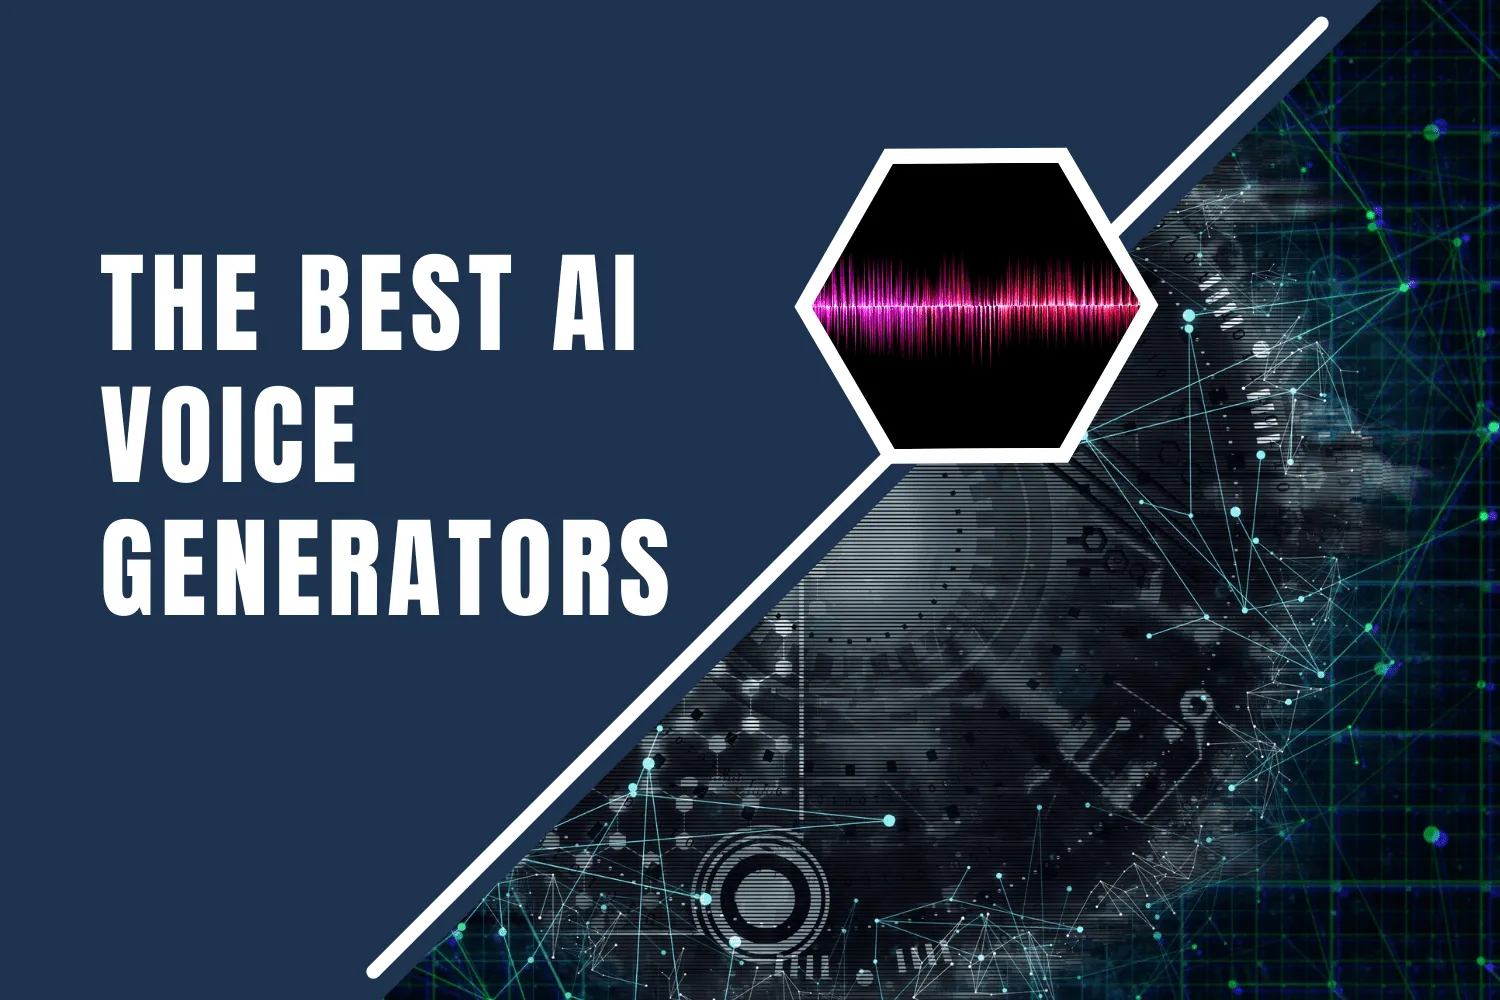 Best AI Voice Generators